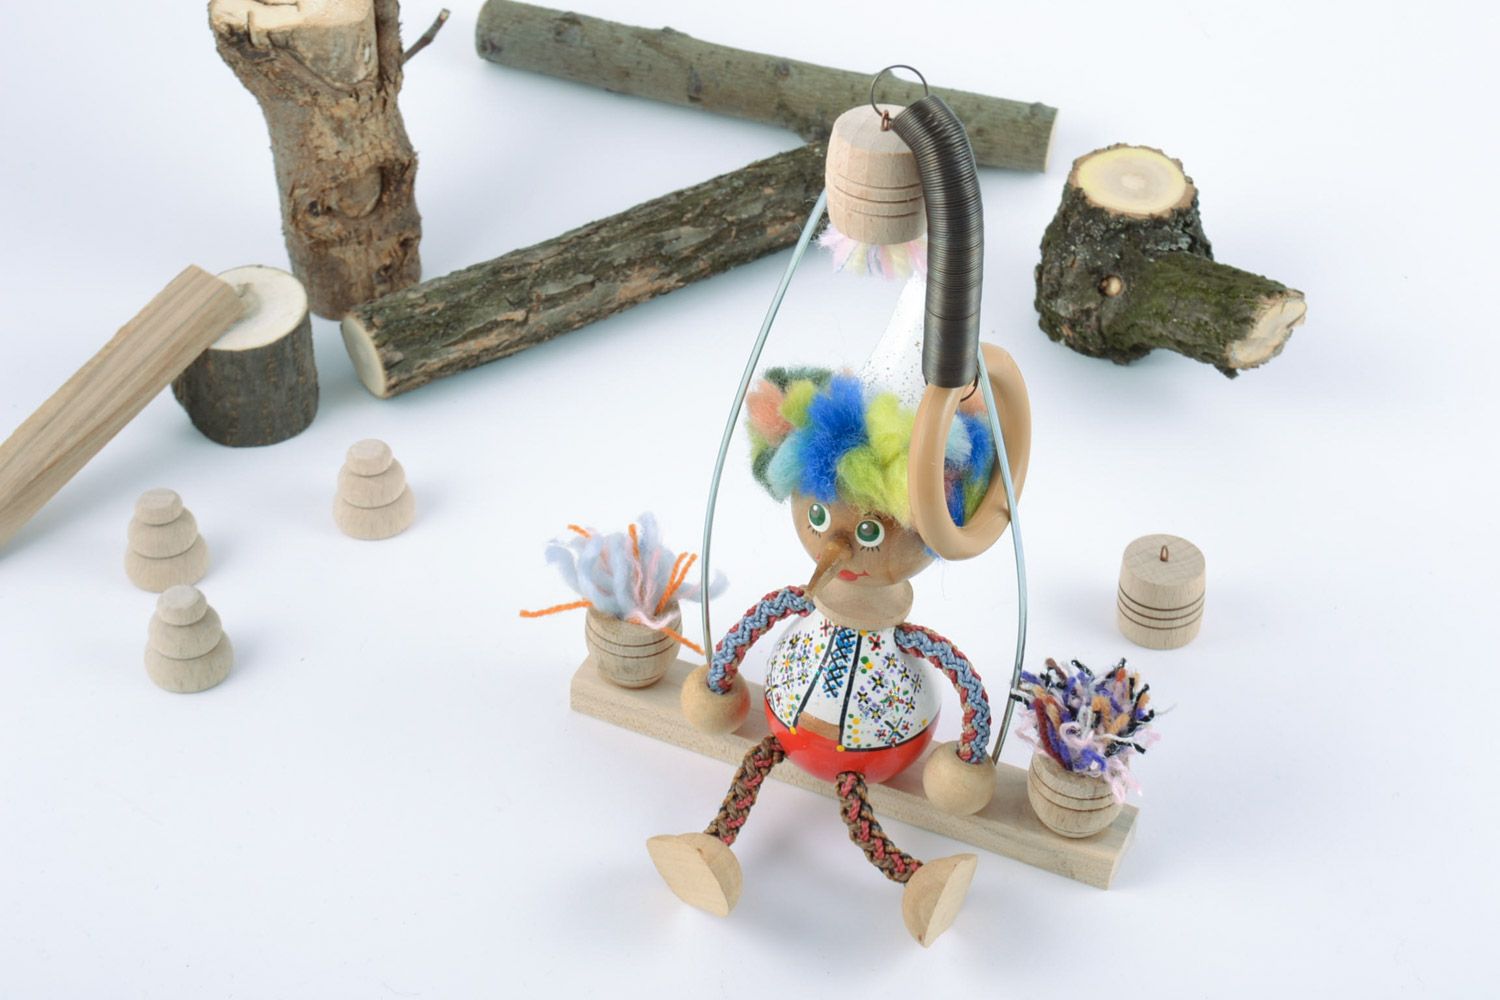 Designer Holz Spielzeug Junge mit Schaukel und Bemalung künstlerische Handarbeit foto 1